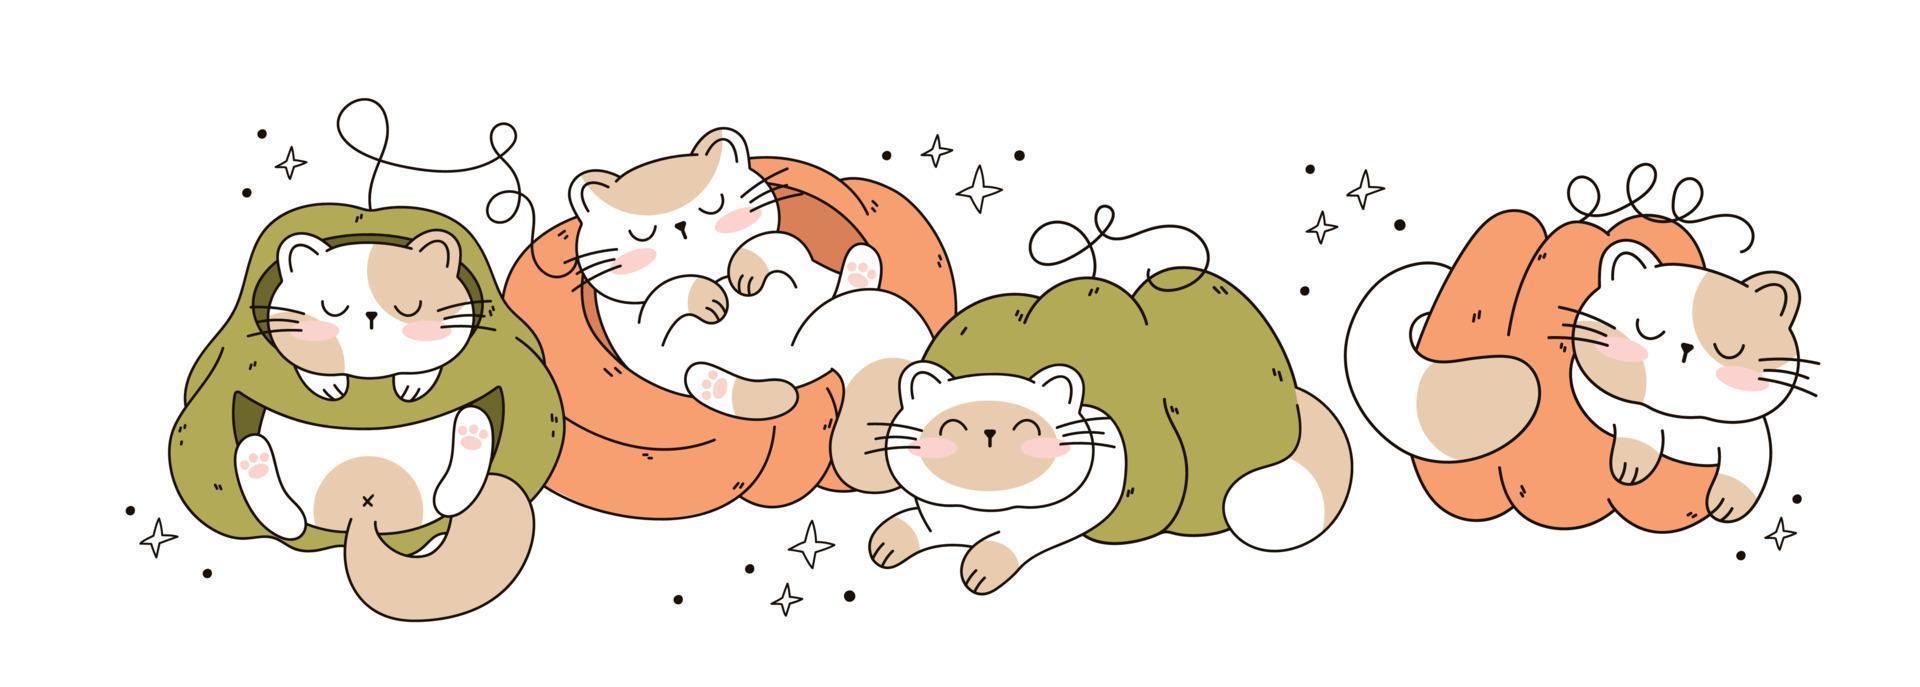 desenhe gatos engraçados dormindo em um gato kawaii de abóboras com abóbora para ação de graças e outono outono ilustração vetorial coleção de personagens de gato. estilo de desenho animado doodle. vetor